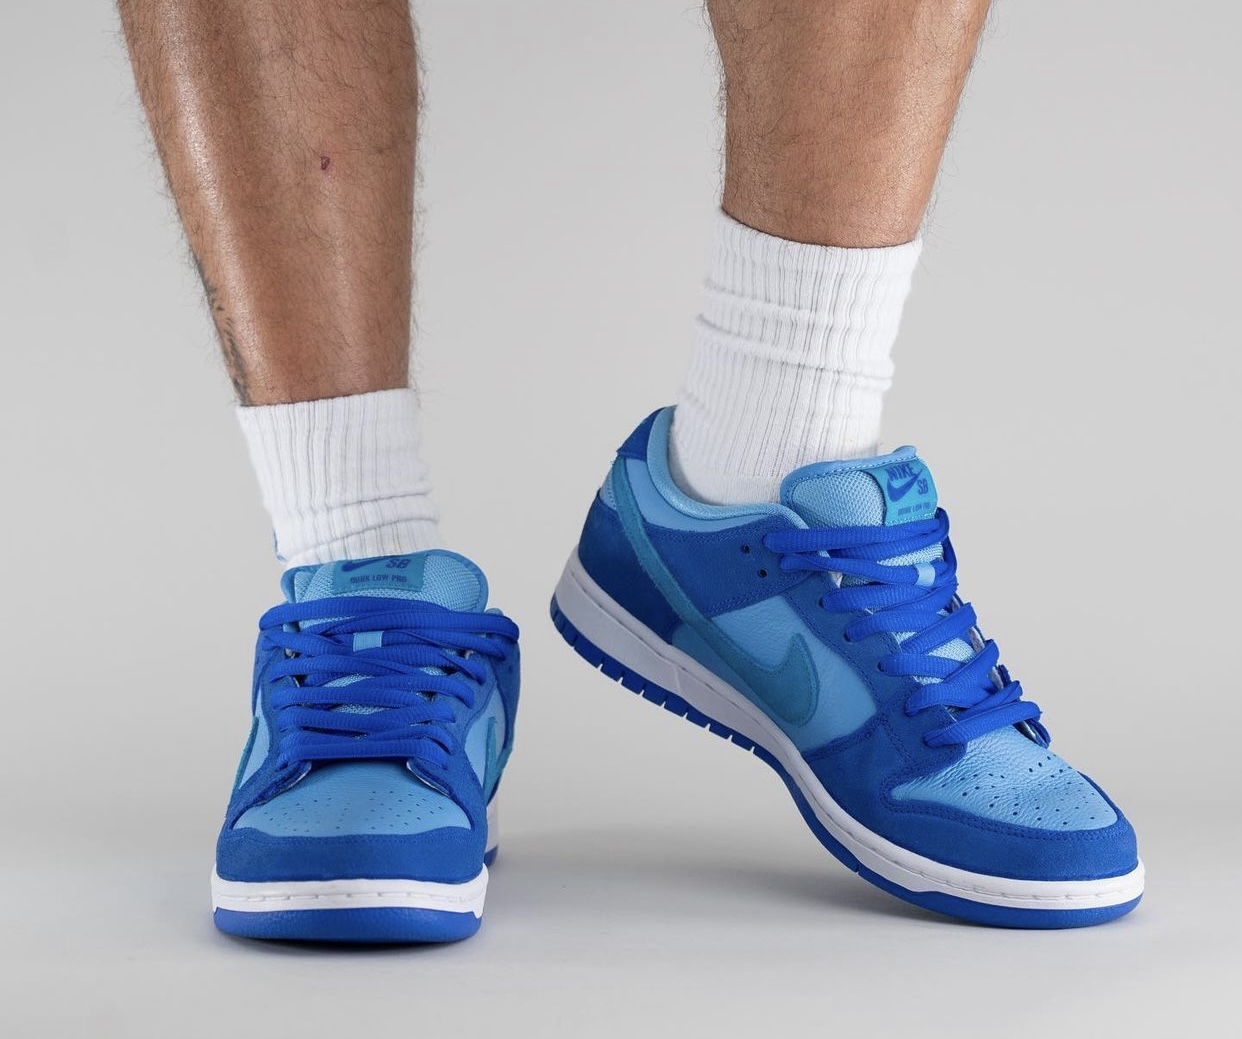 Nike SB Dunk Low Blue Raspberry DM0807-400 Release Date On-Feet